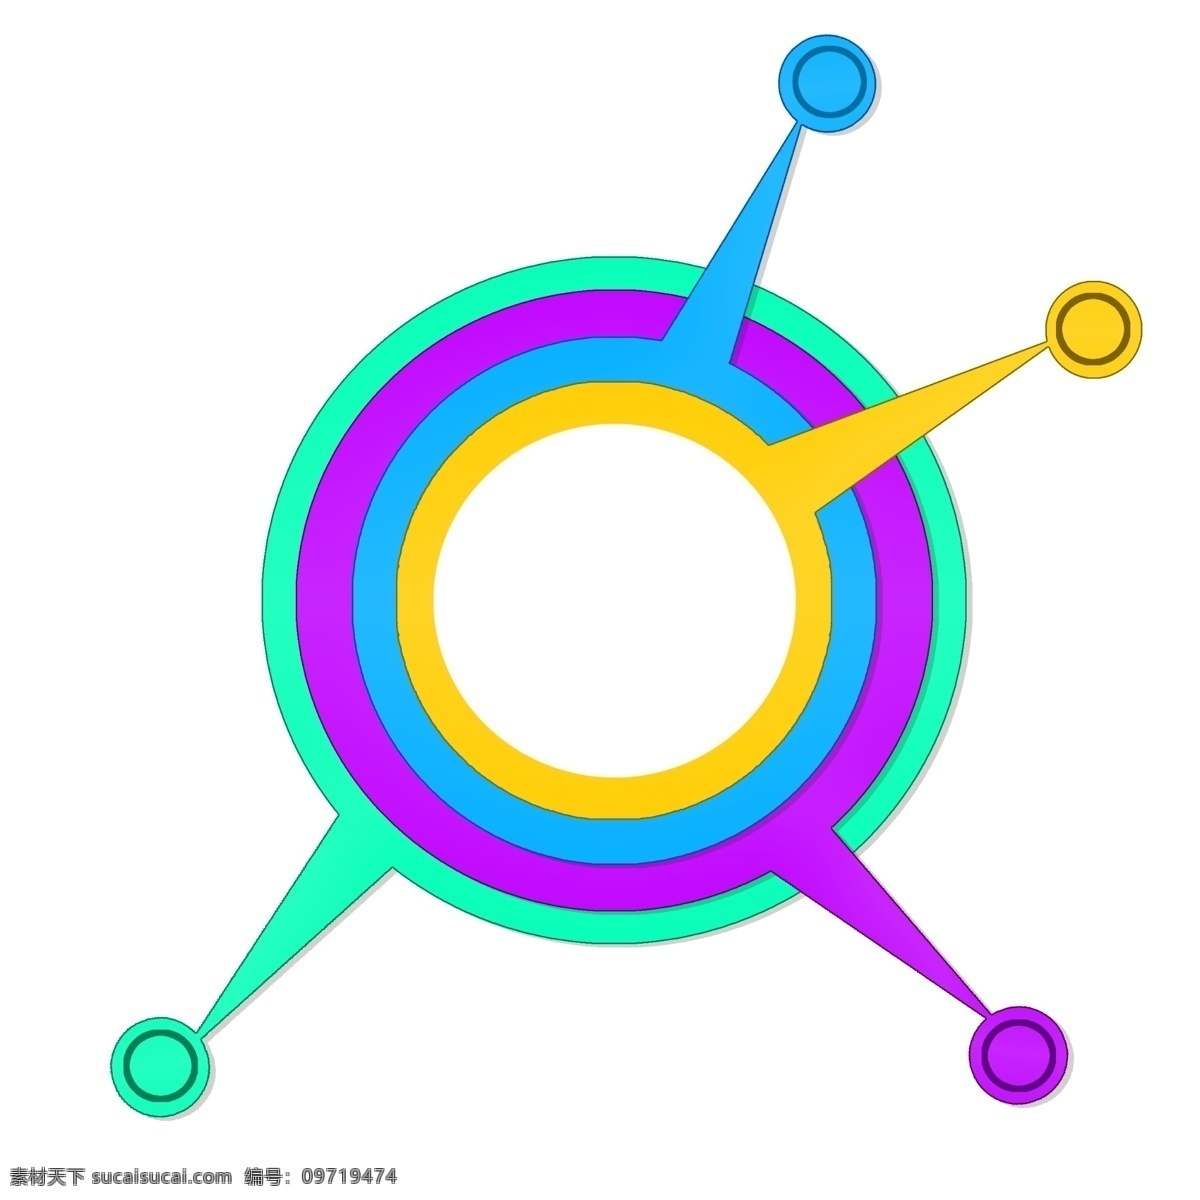 环形 分析图表 插图 绿色 紫色 蓝色 分析图表插图 环形图表 ppt图表